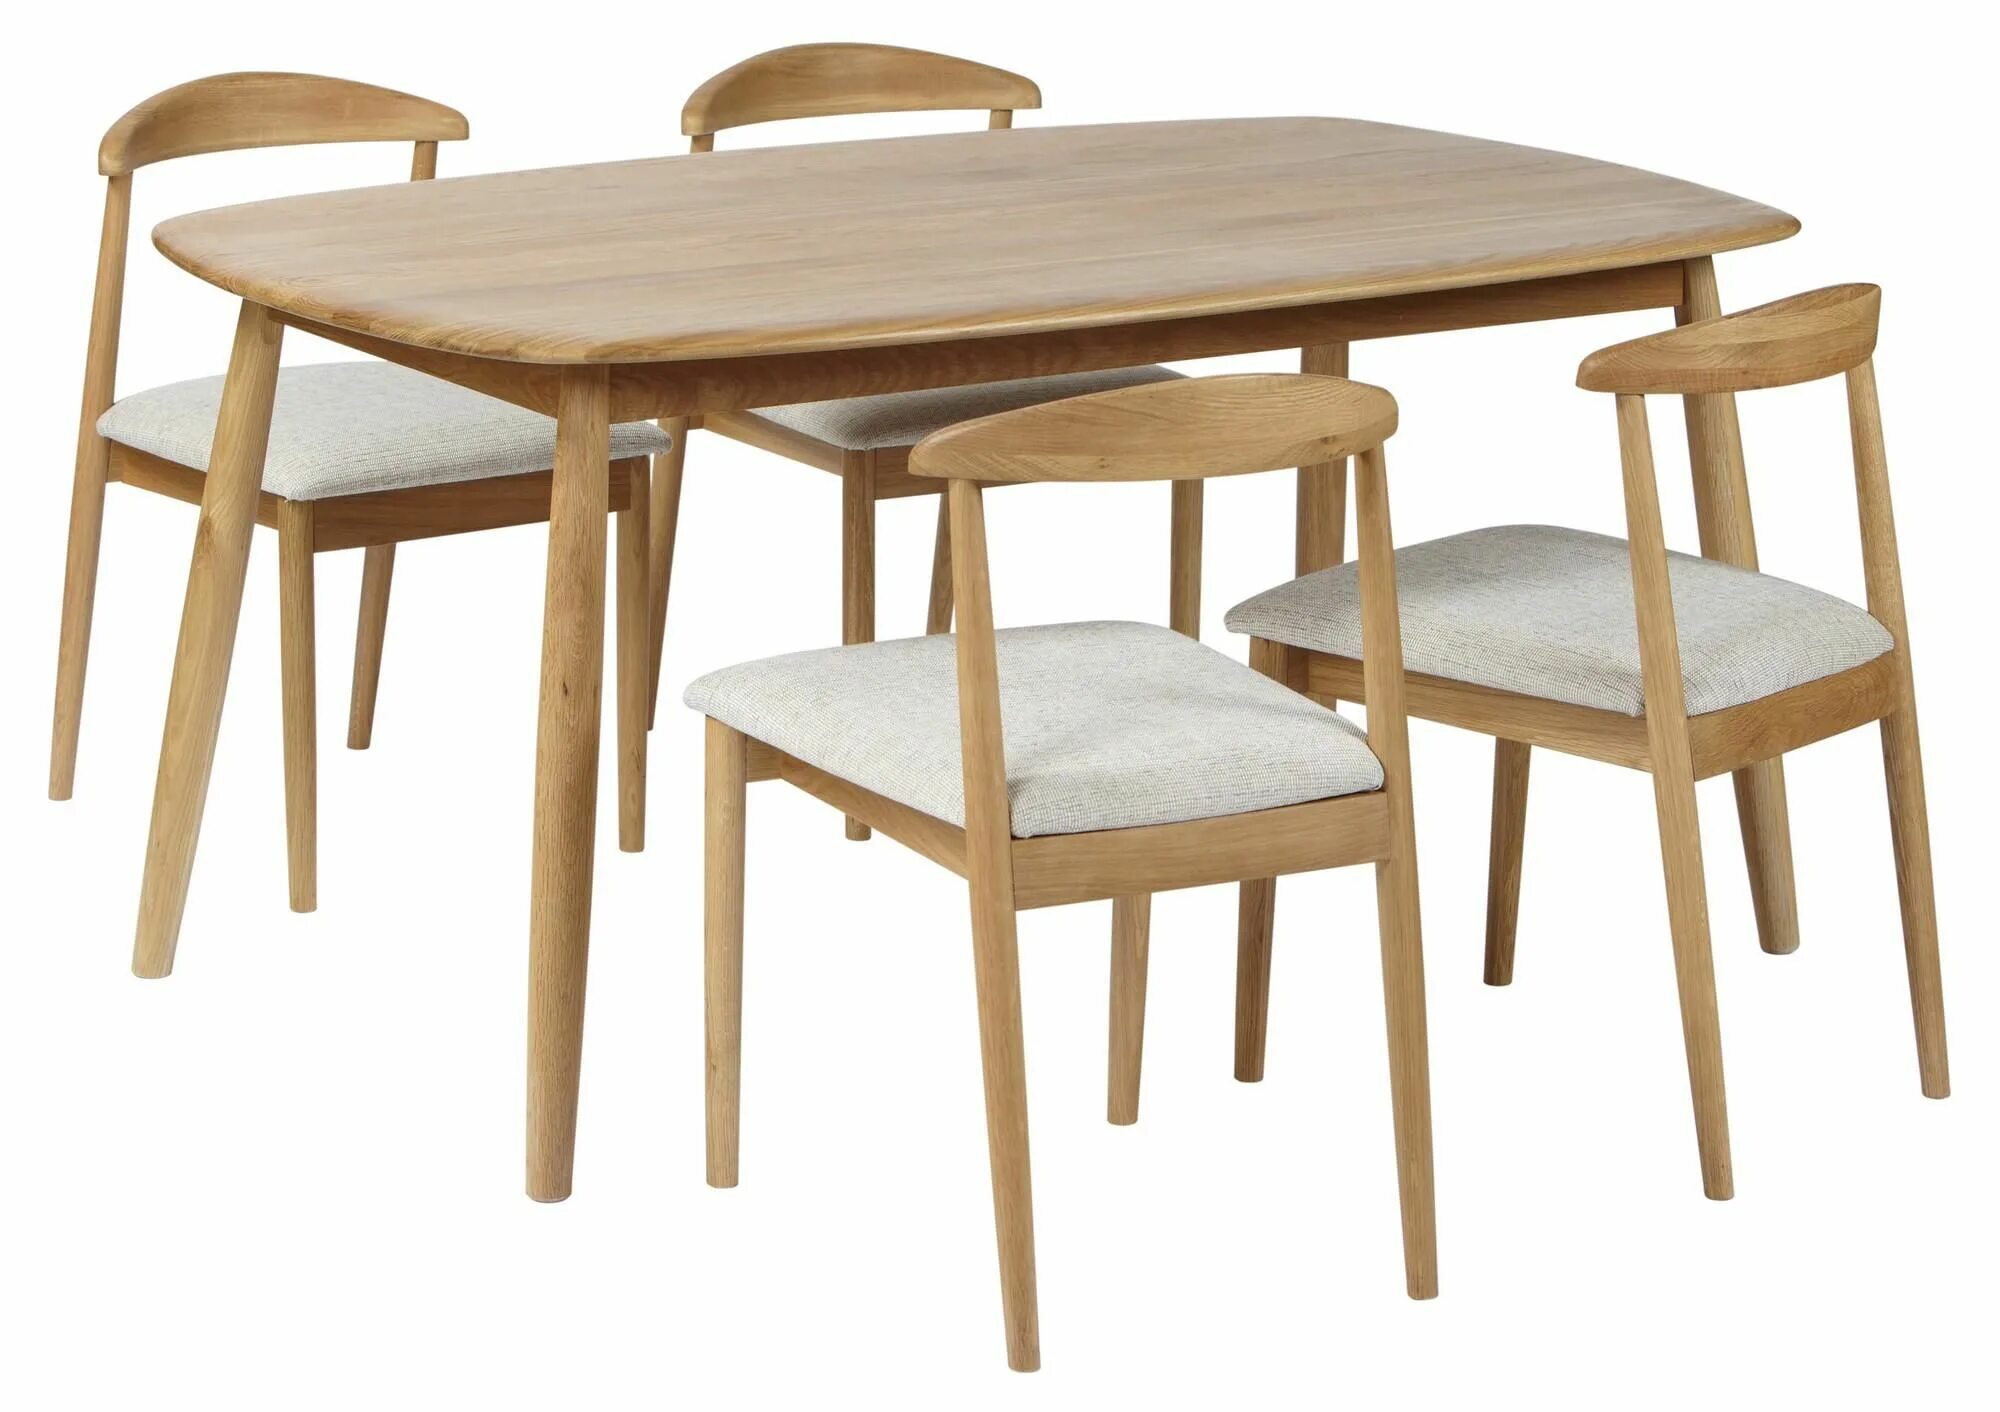 9 4 столиком. Кухонный стол для фотошопа. Столы и стулья для ресторана. Стол с.822. Банкетный стол со стульями вид сверху.